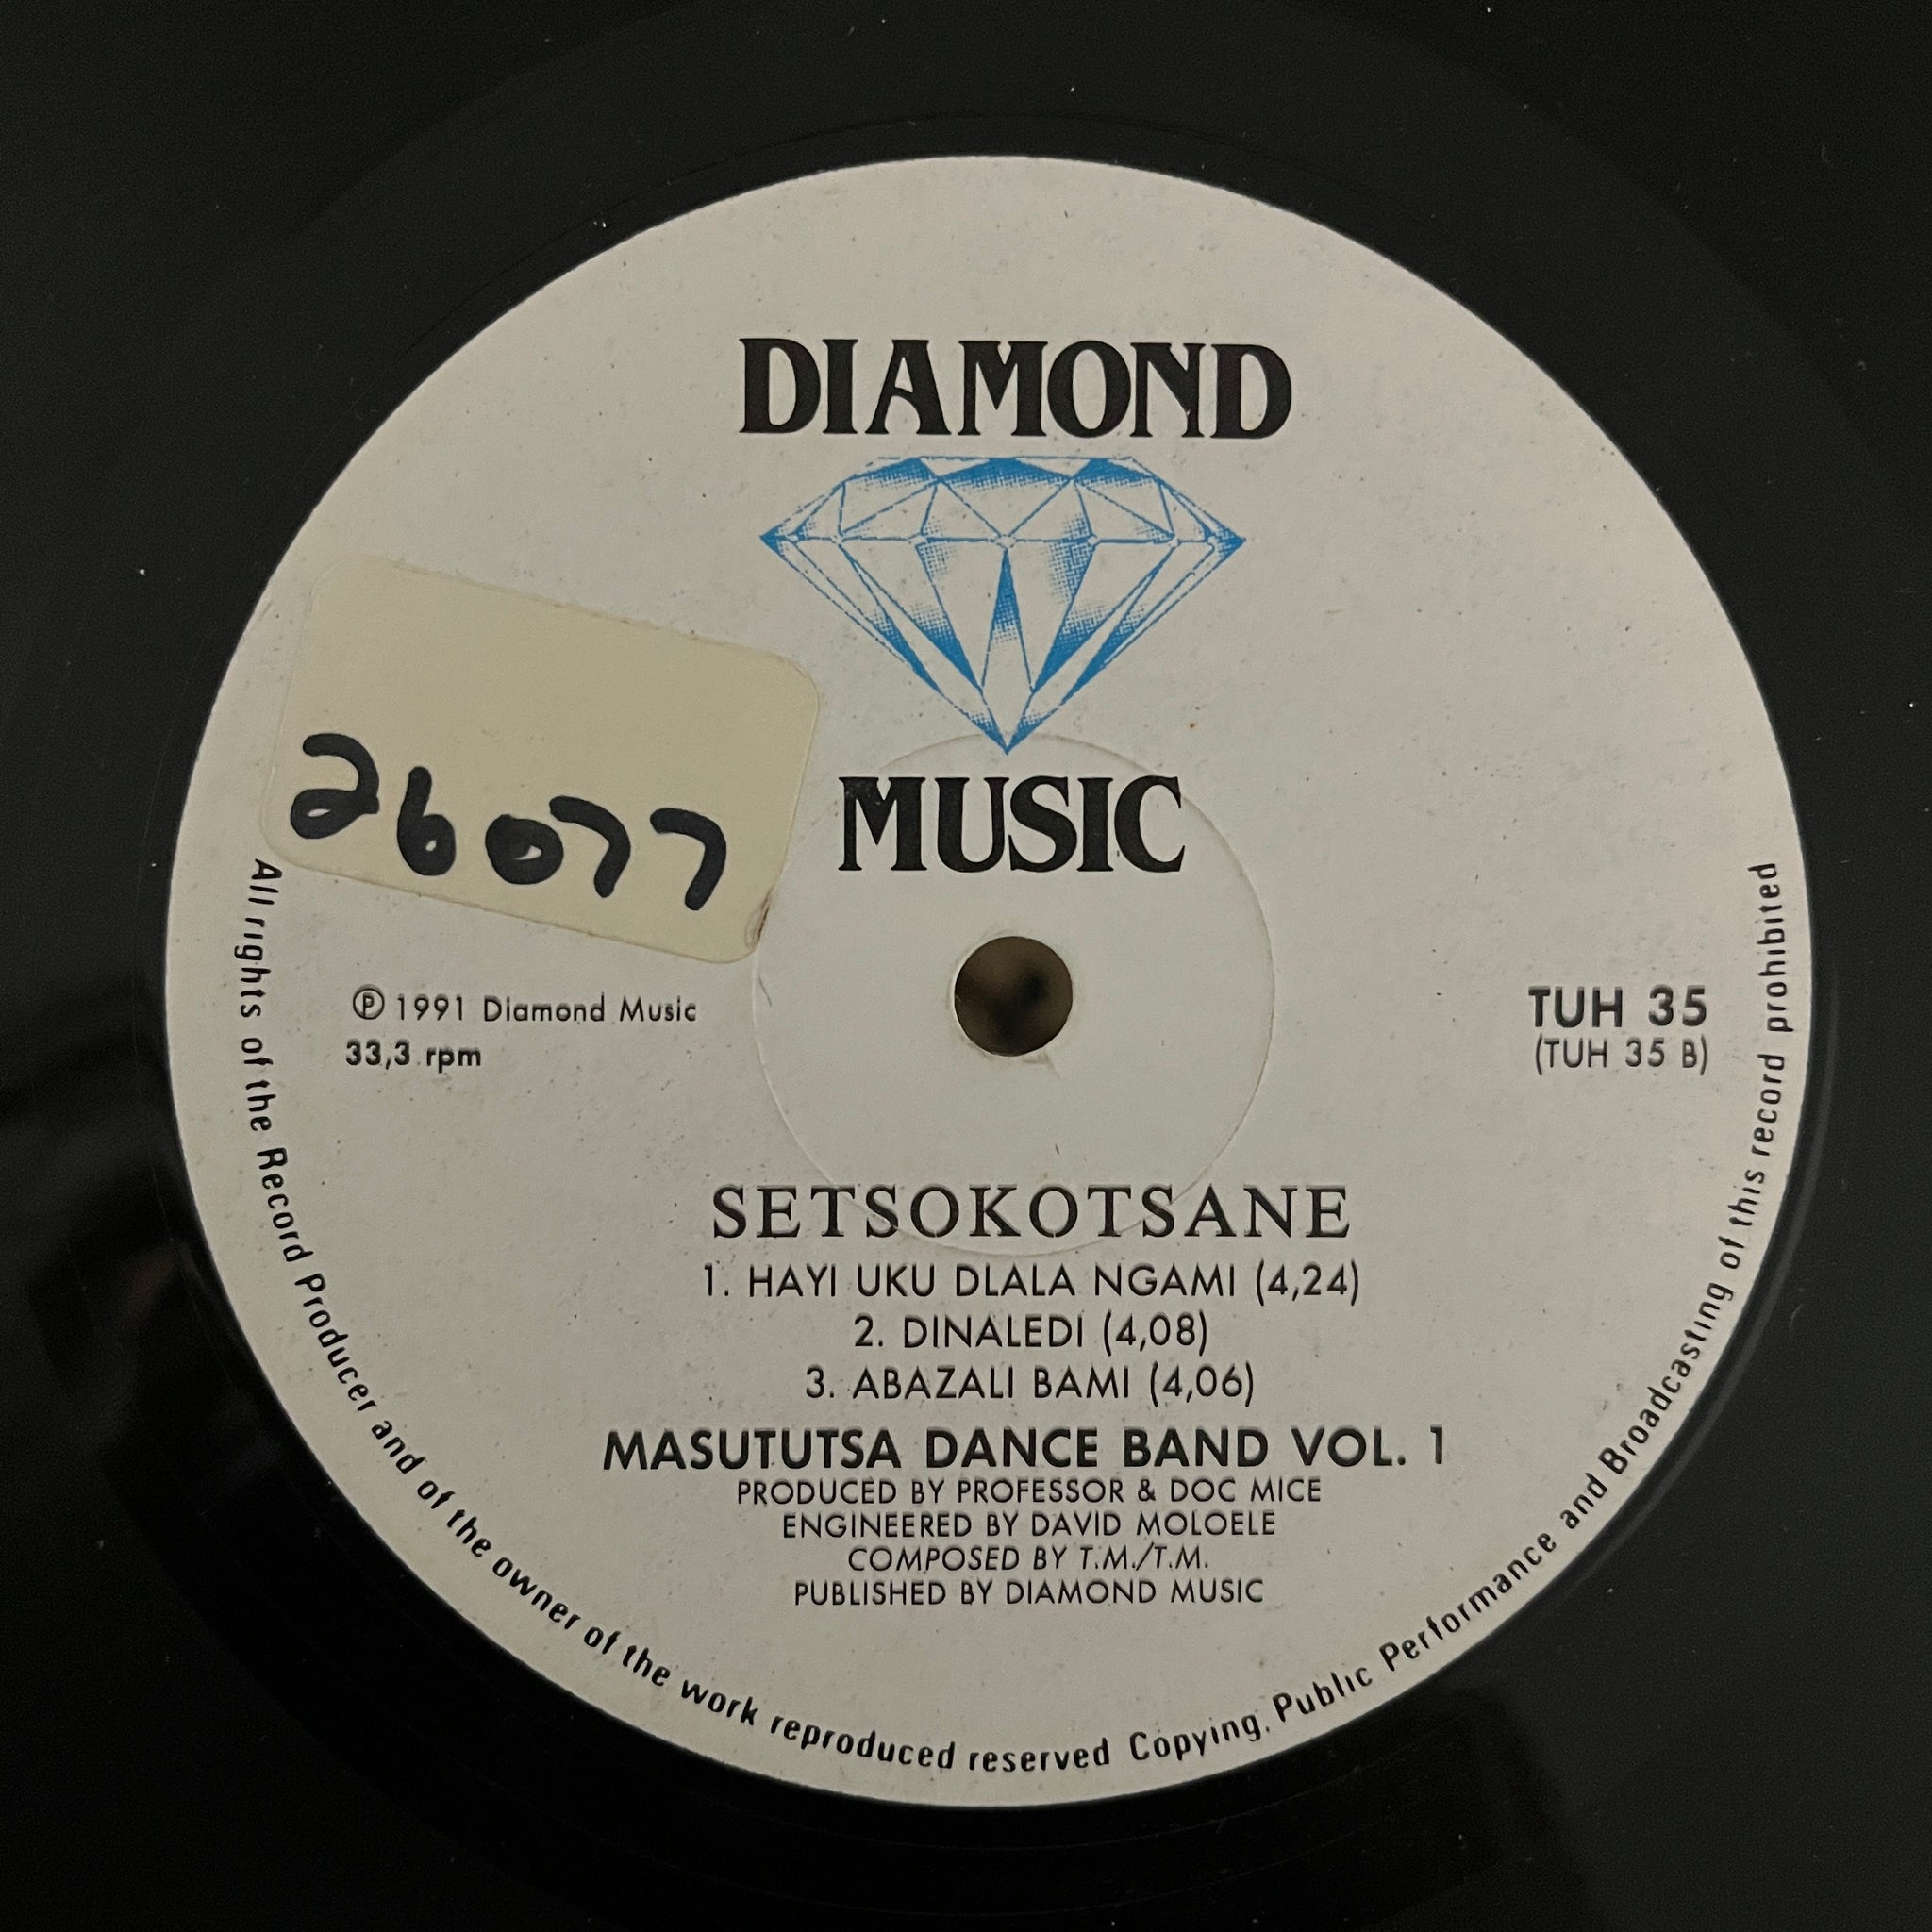 Masututsa Dance Band Vol. 1 - Setsokotsane